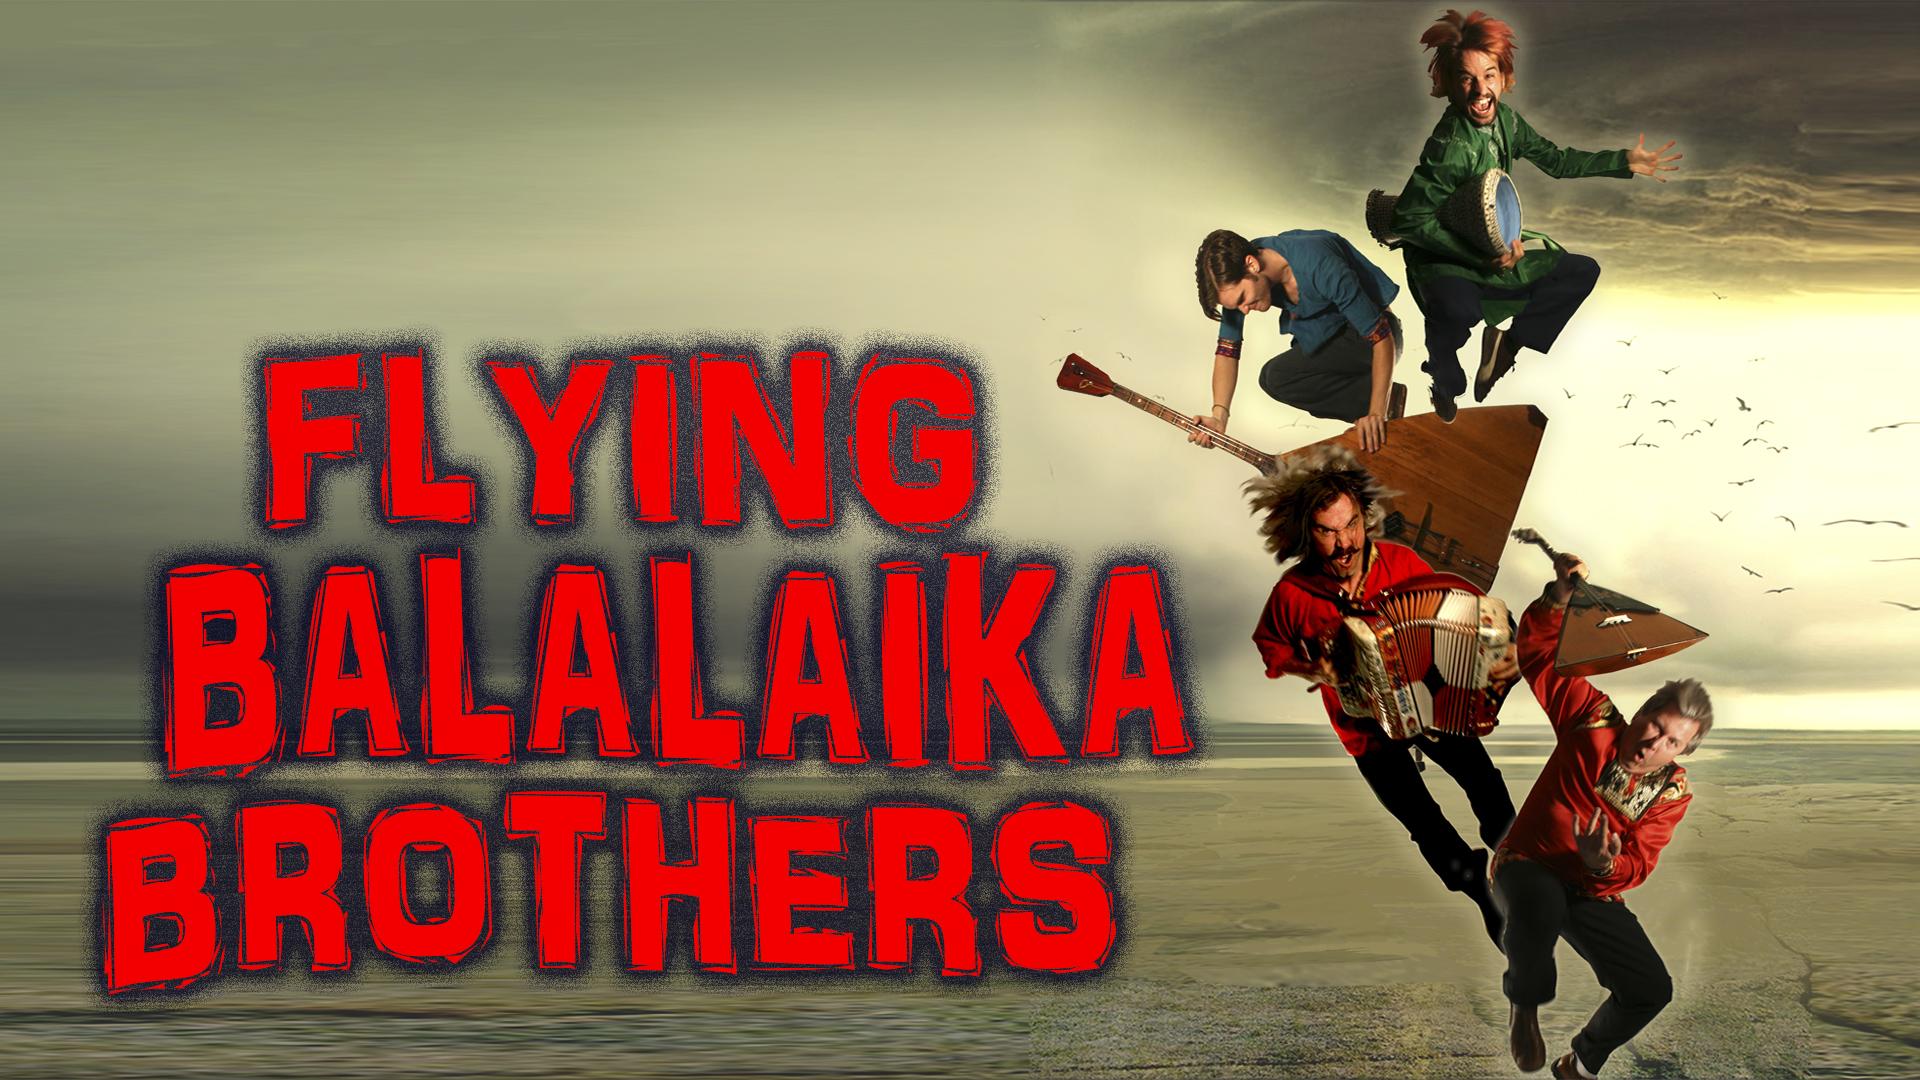 Flying Balalaika Brothers in Atlanta!